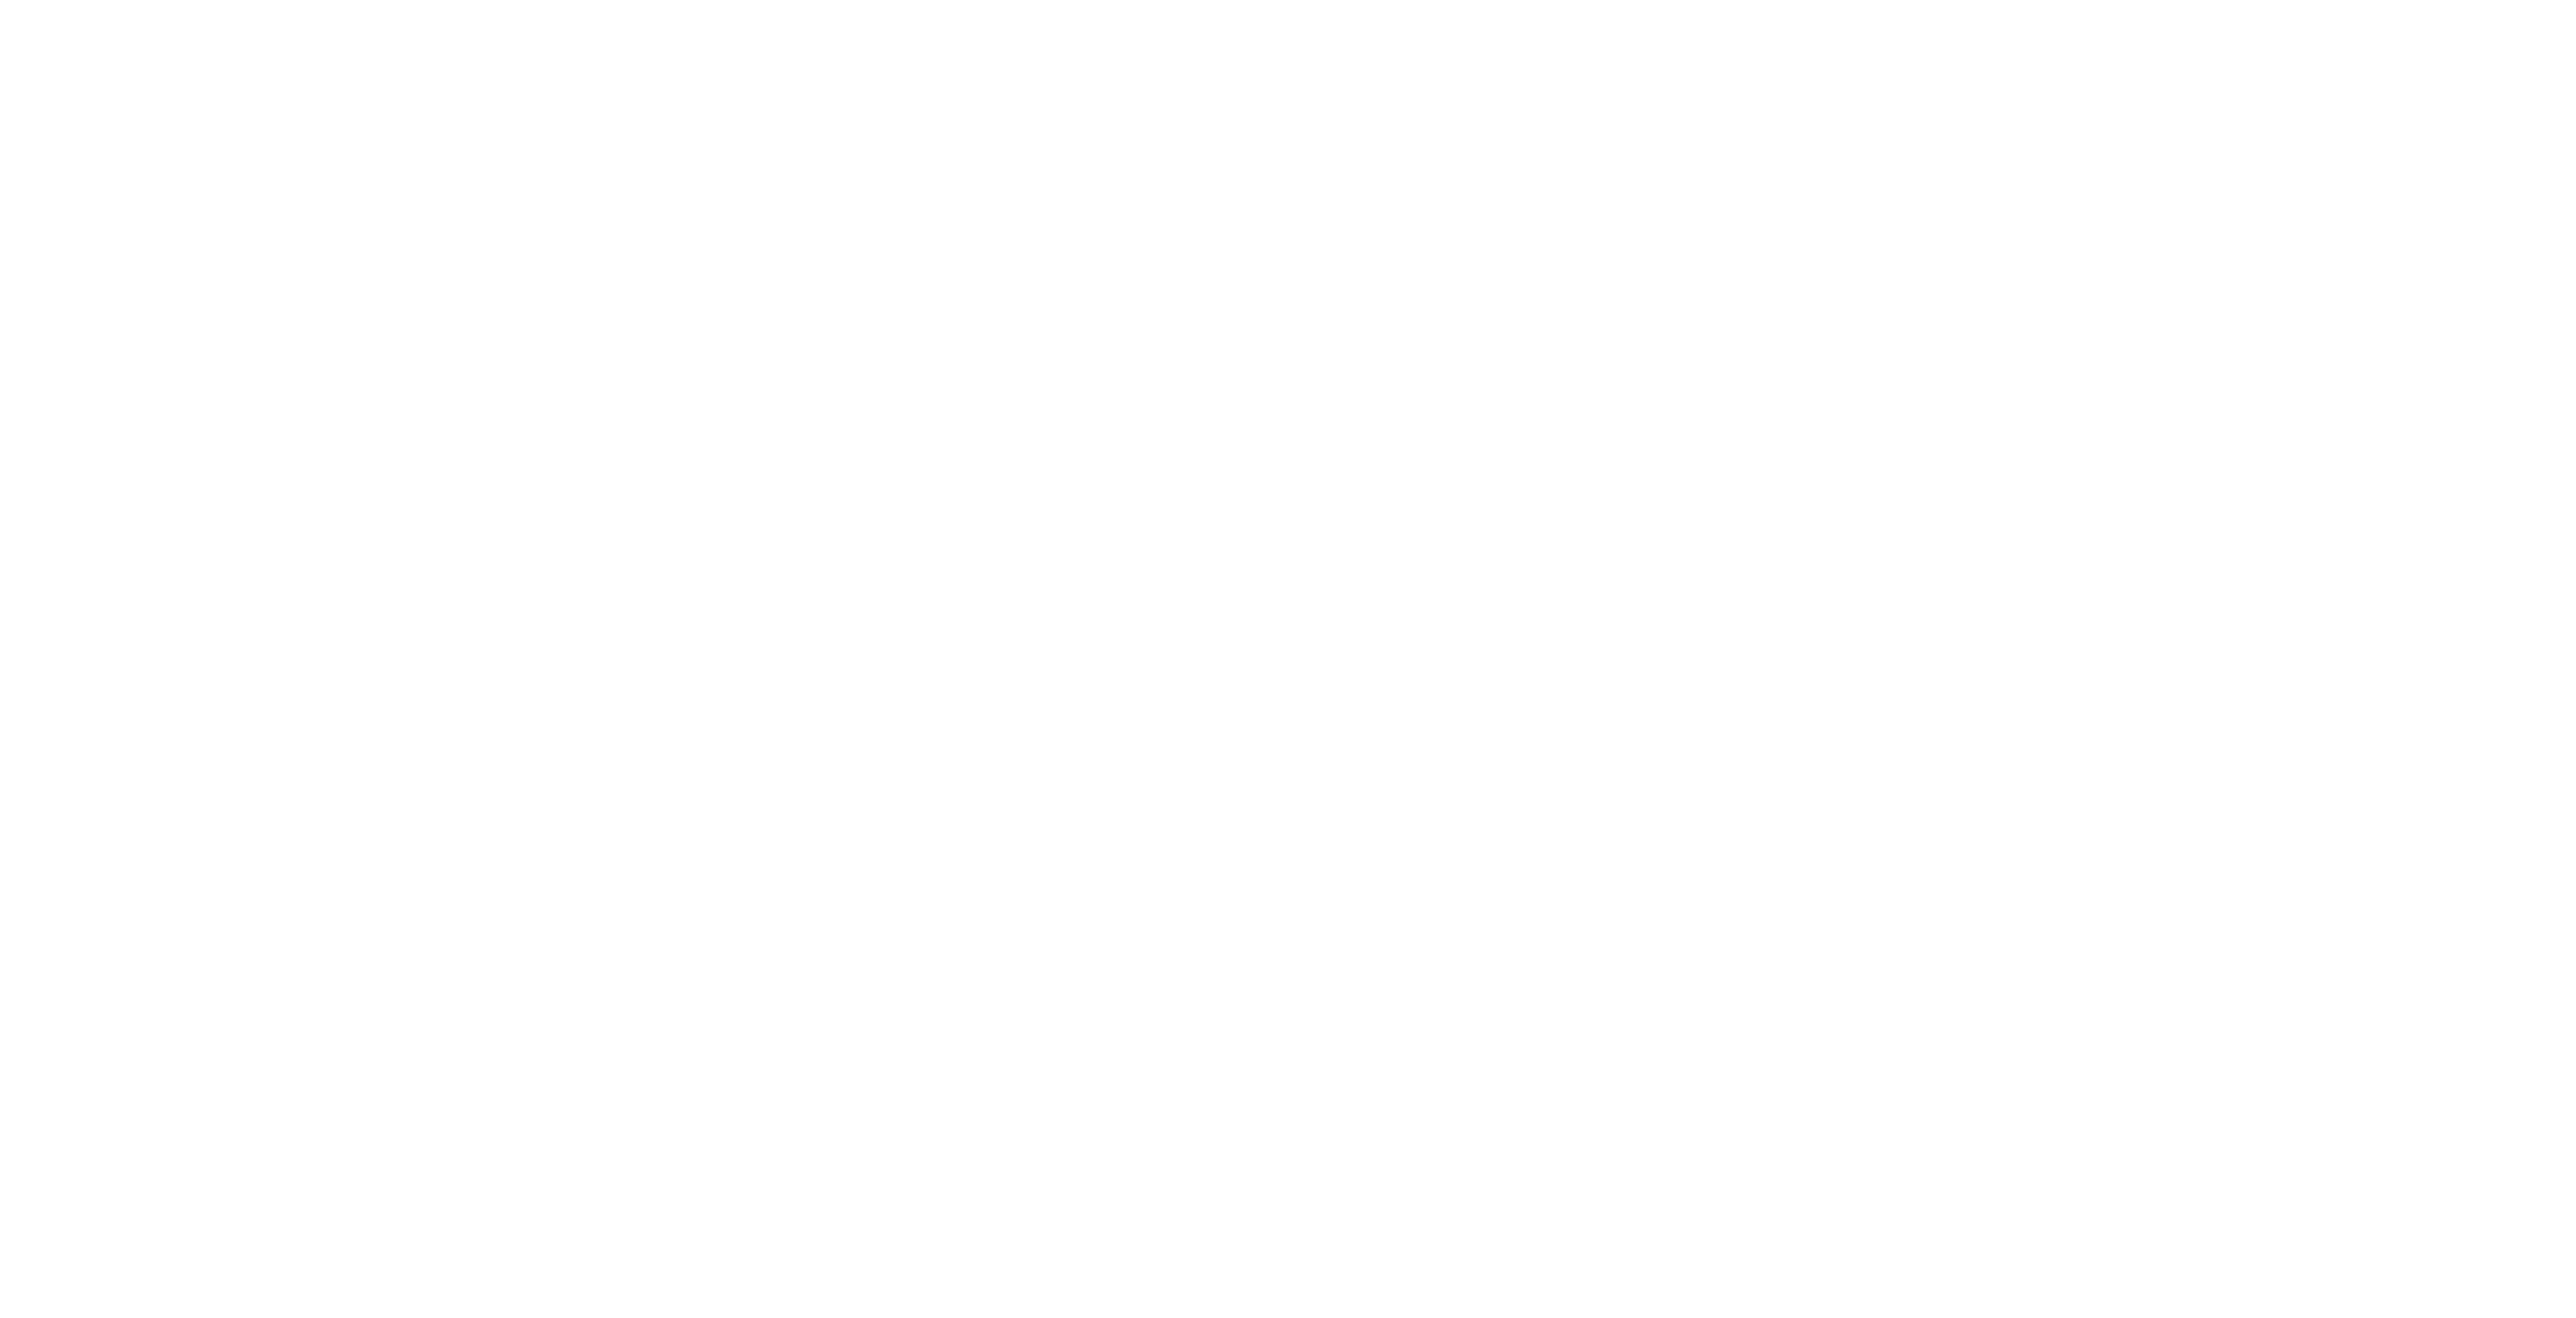 Abrar Islamic Foundation